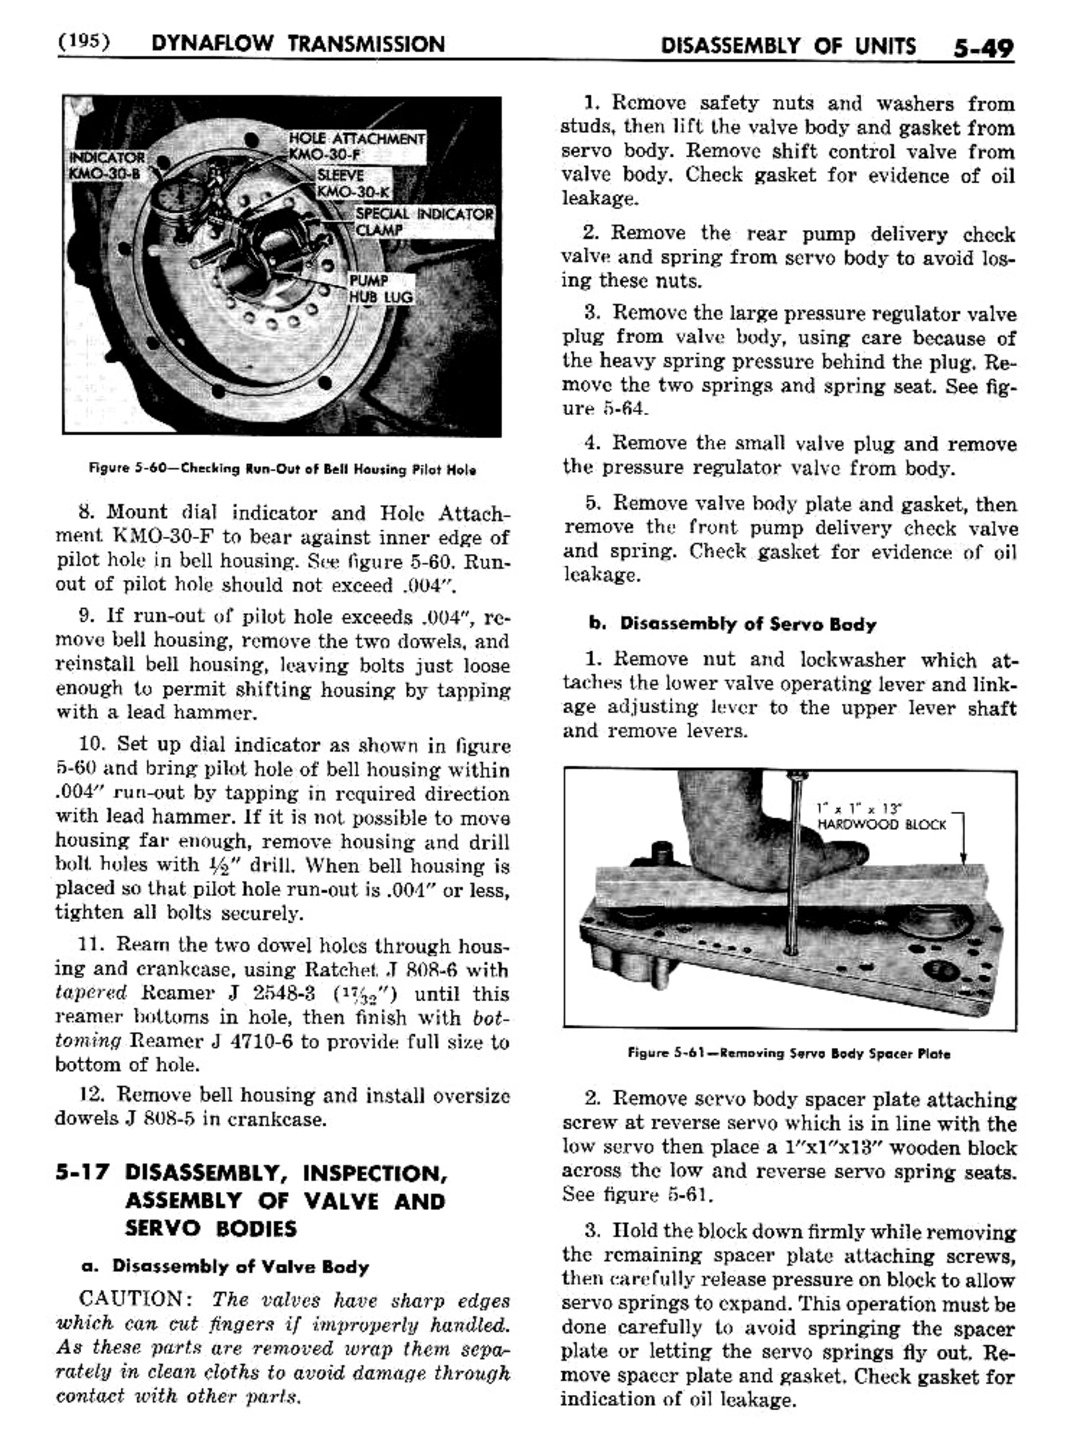 n_06 1956 Buick Shop Manual - Dynaflow-049-049.jpg